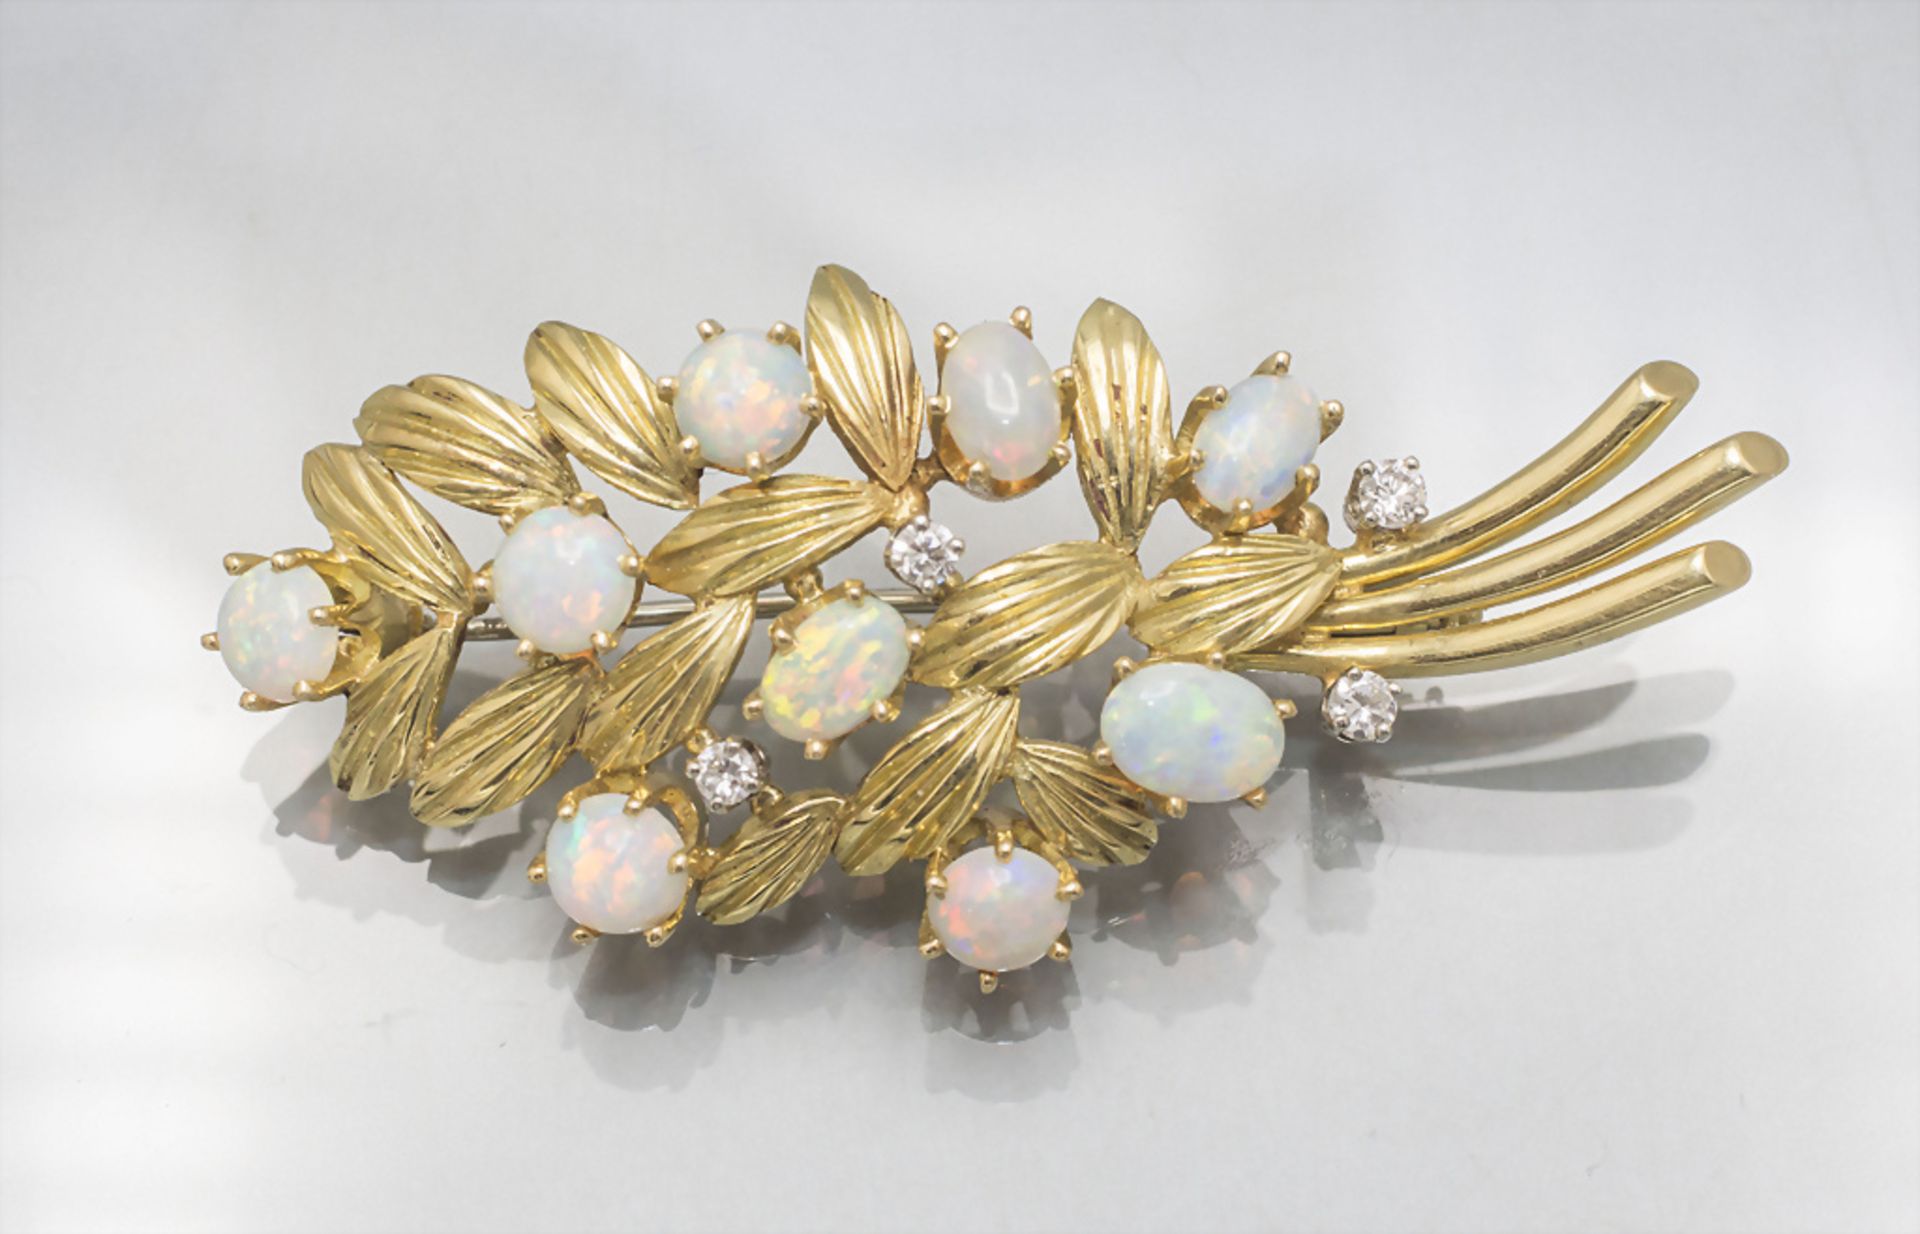 Goldbrosche mit Opalen und Diamanten / An 18 ct gold brooch with opal and diamonds - Bild 2 aus 3